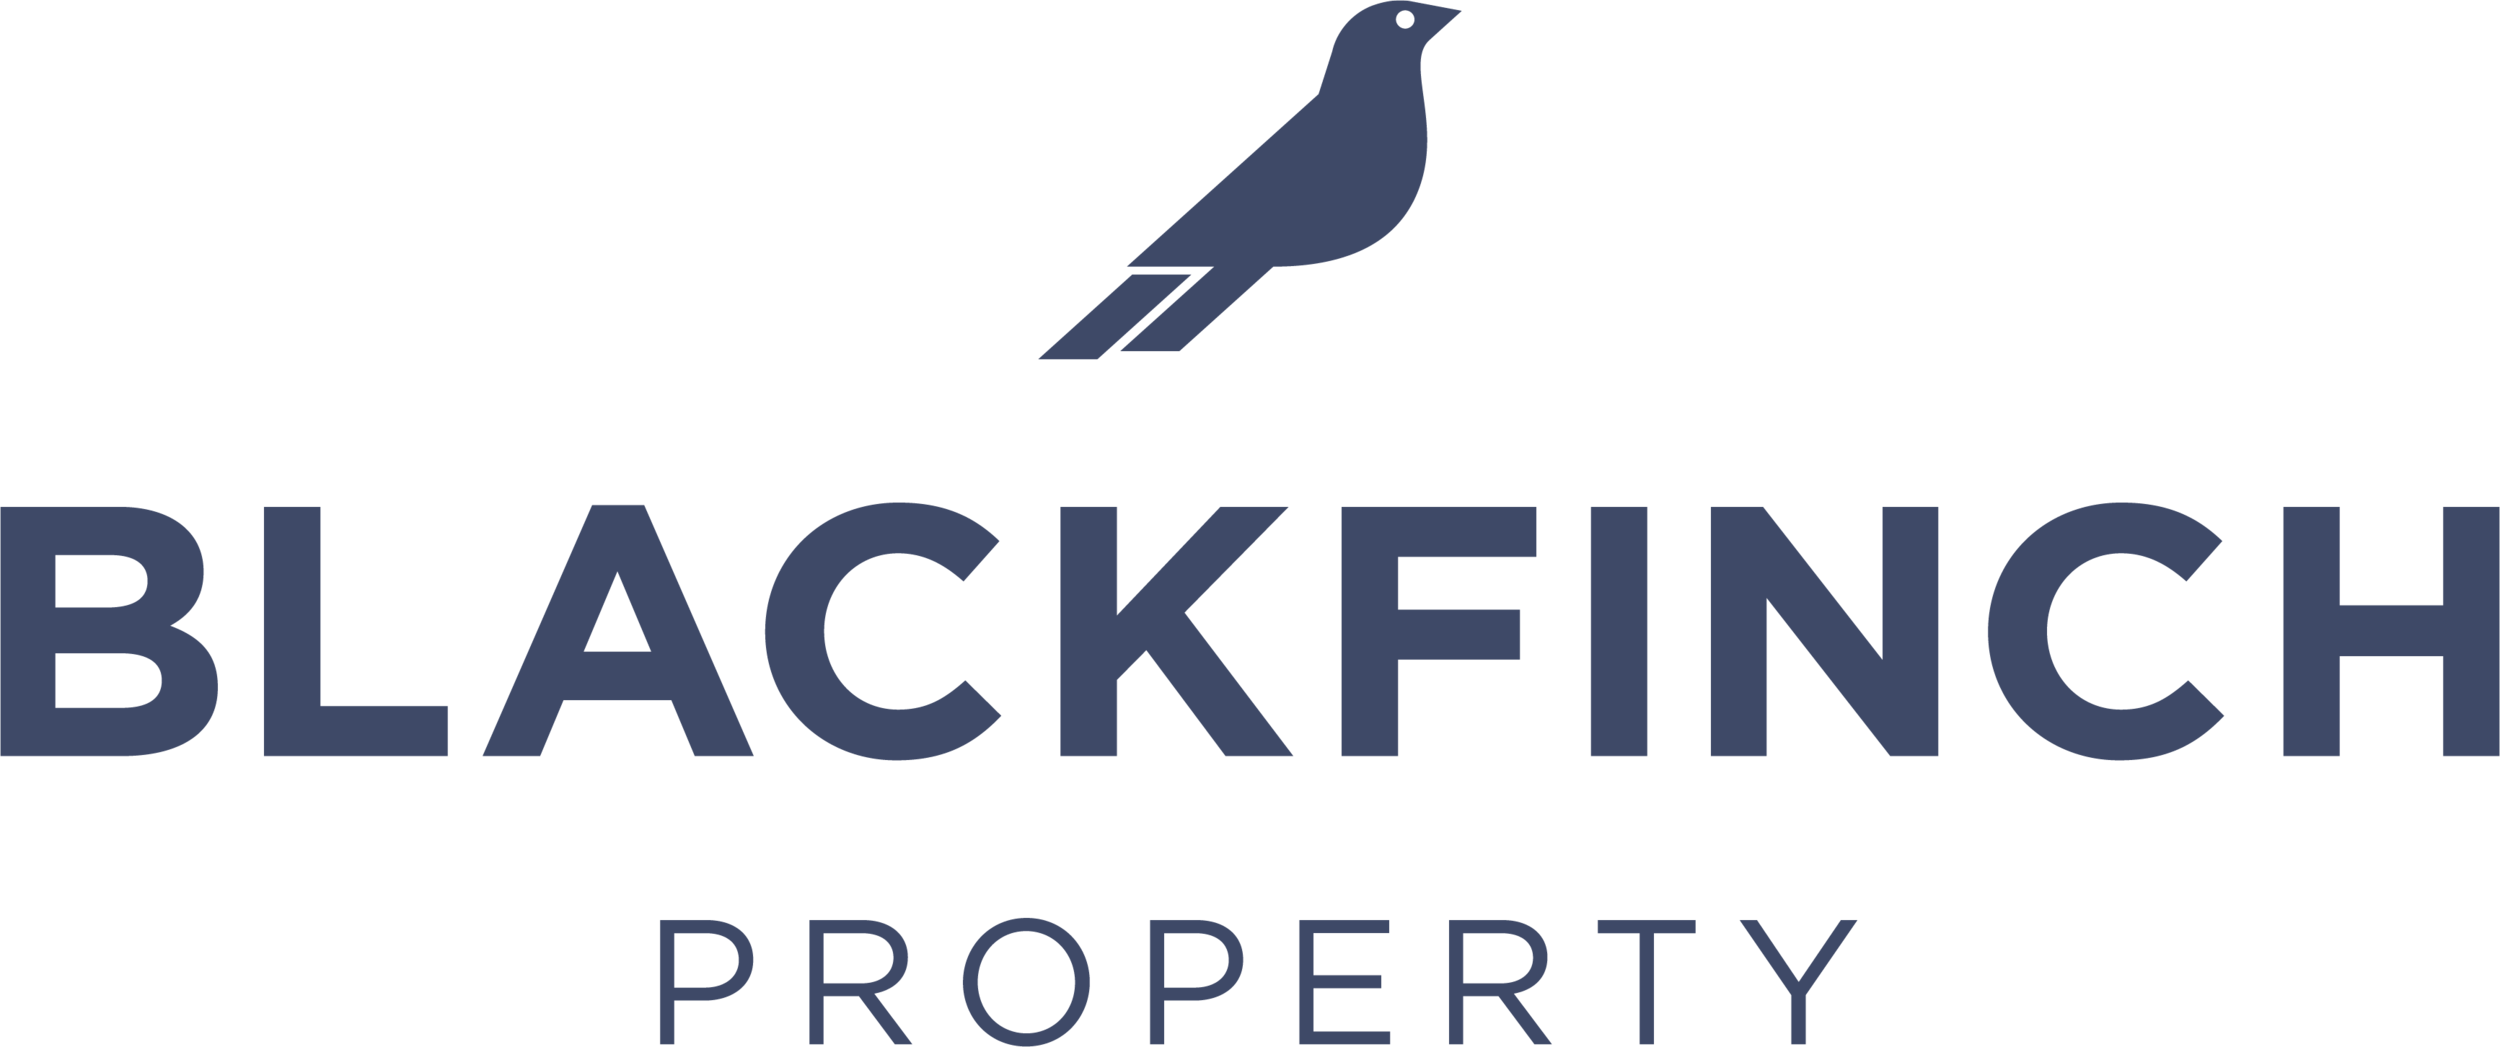 BlackFinch_PropertyLogo_HighRes.png